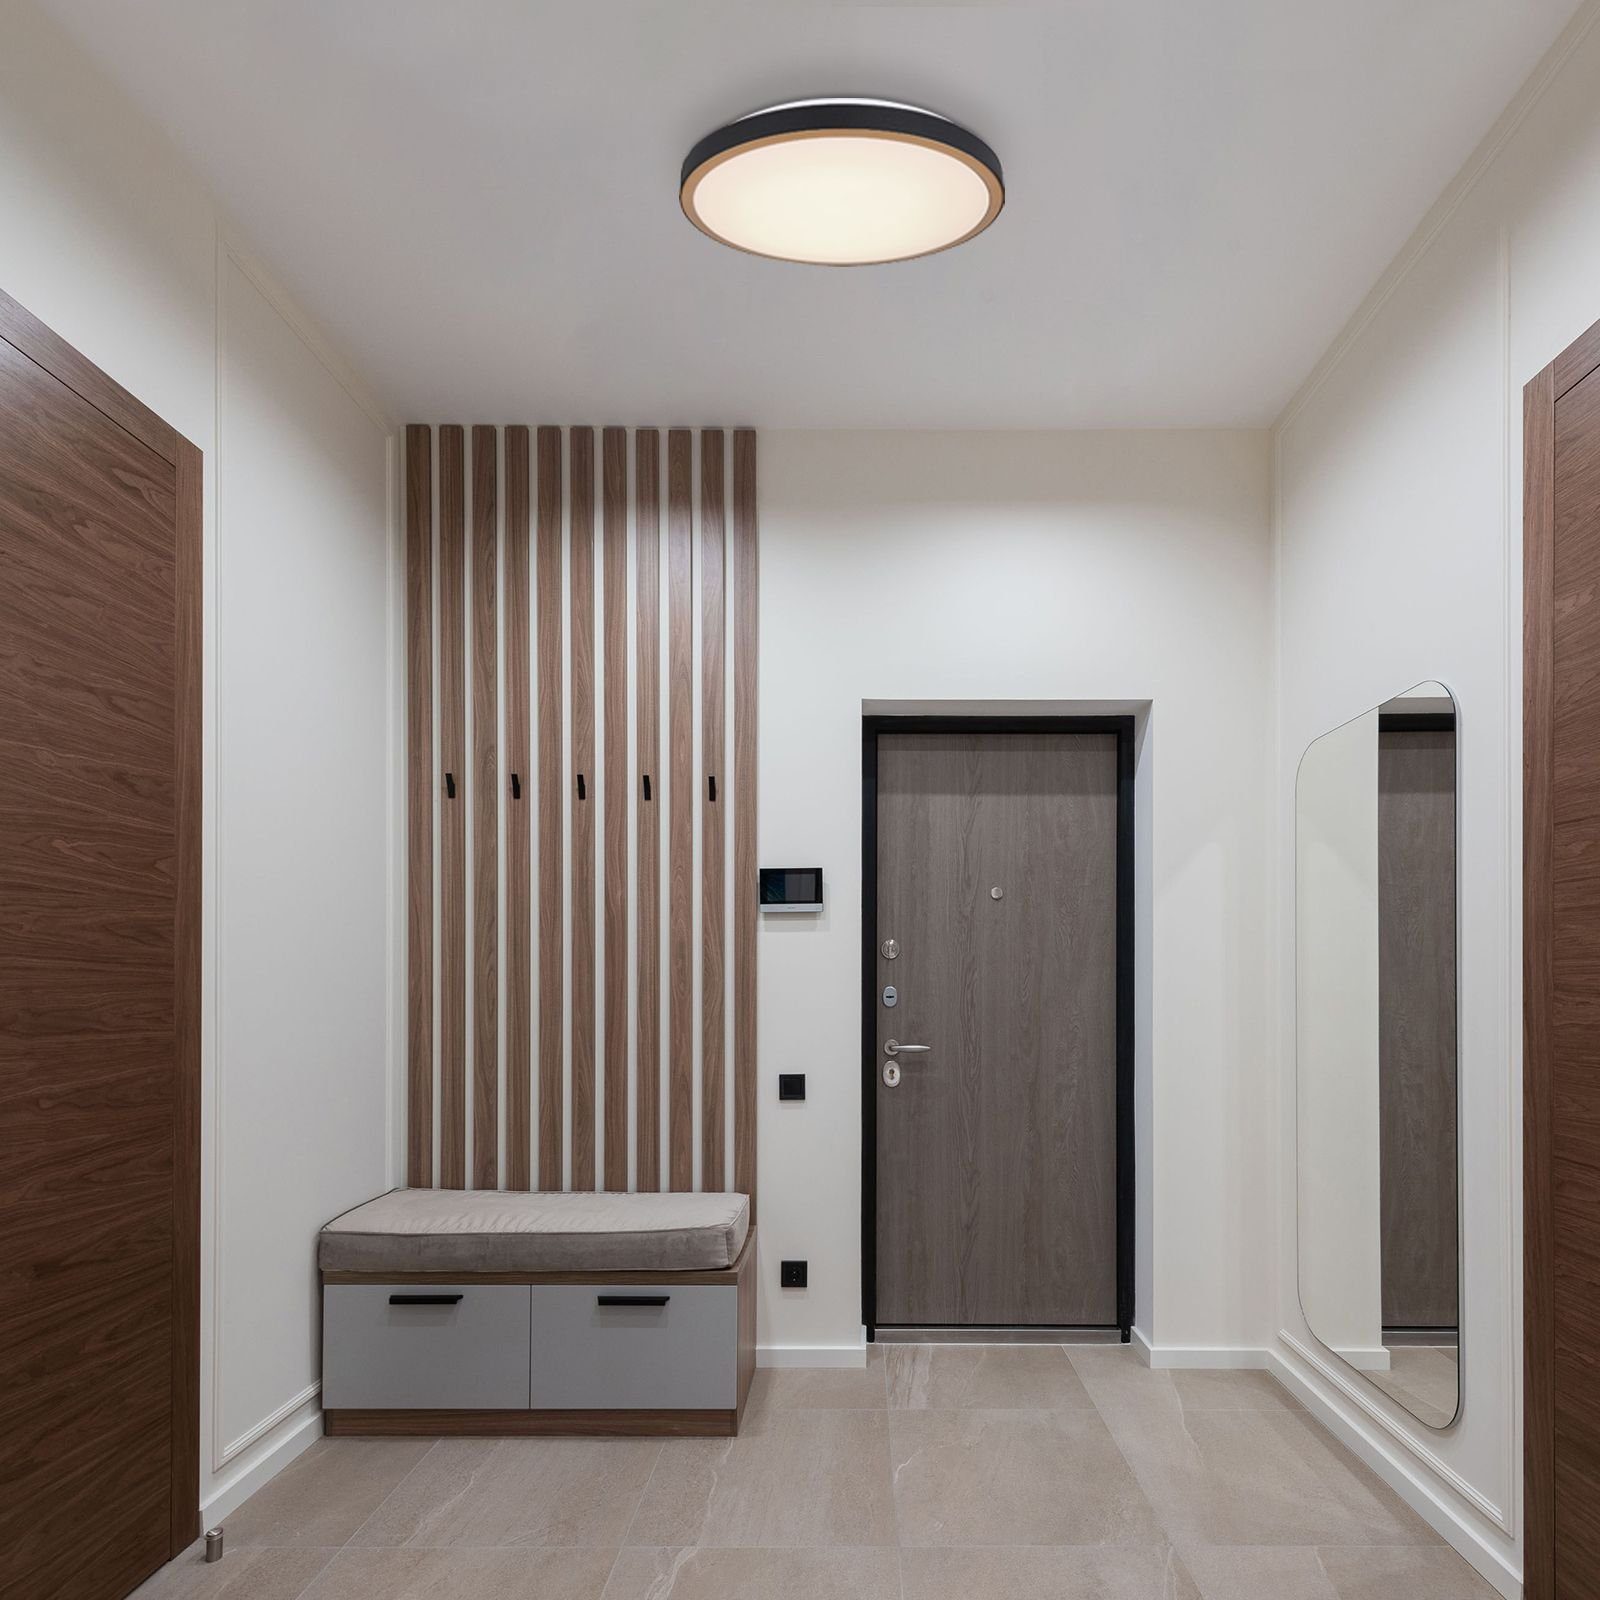 GLOBO Wohnzimmer Küche Schlafzimmer Deckenleuchte Deckenleuchte Deckenlampe Globo LED